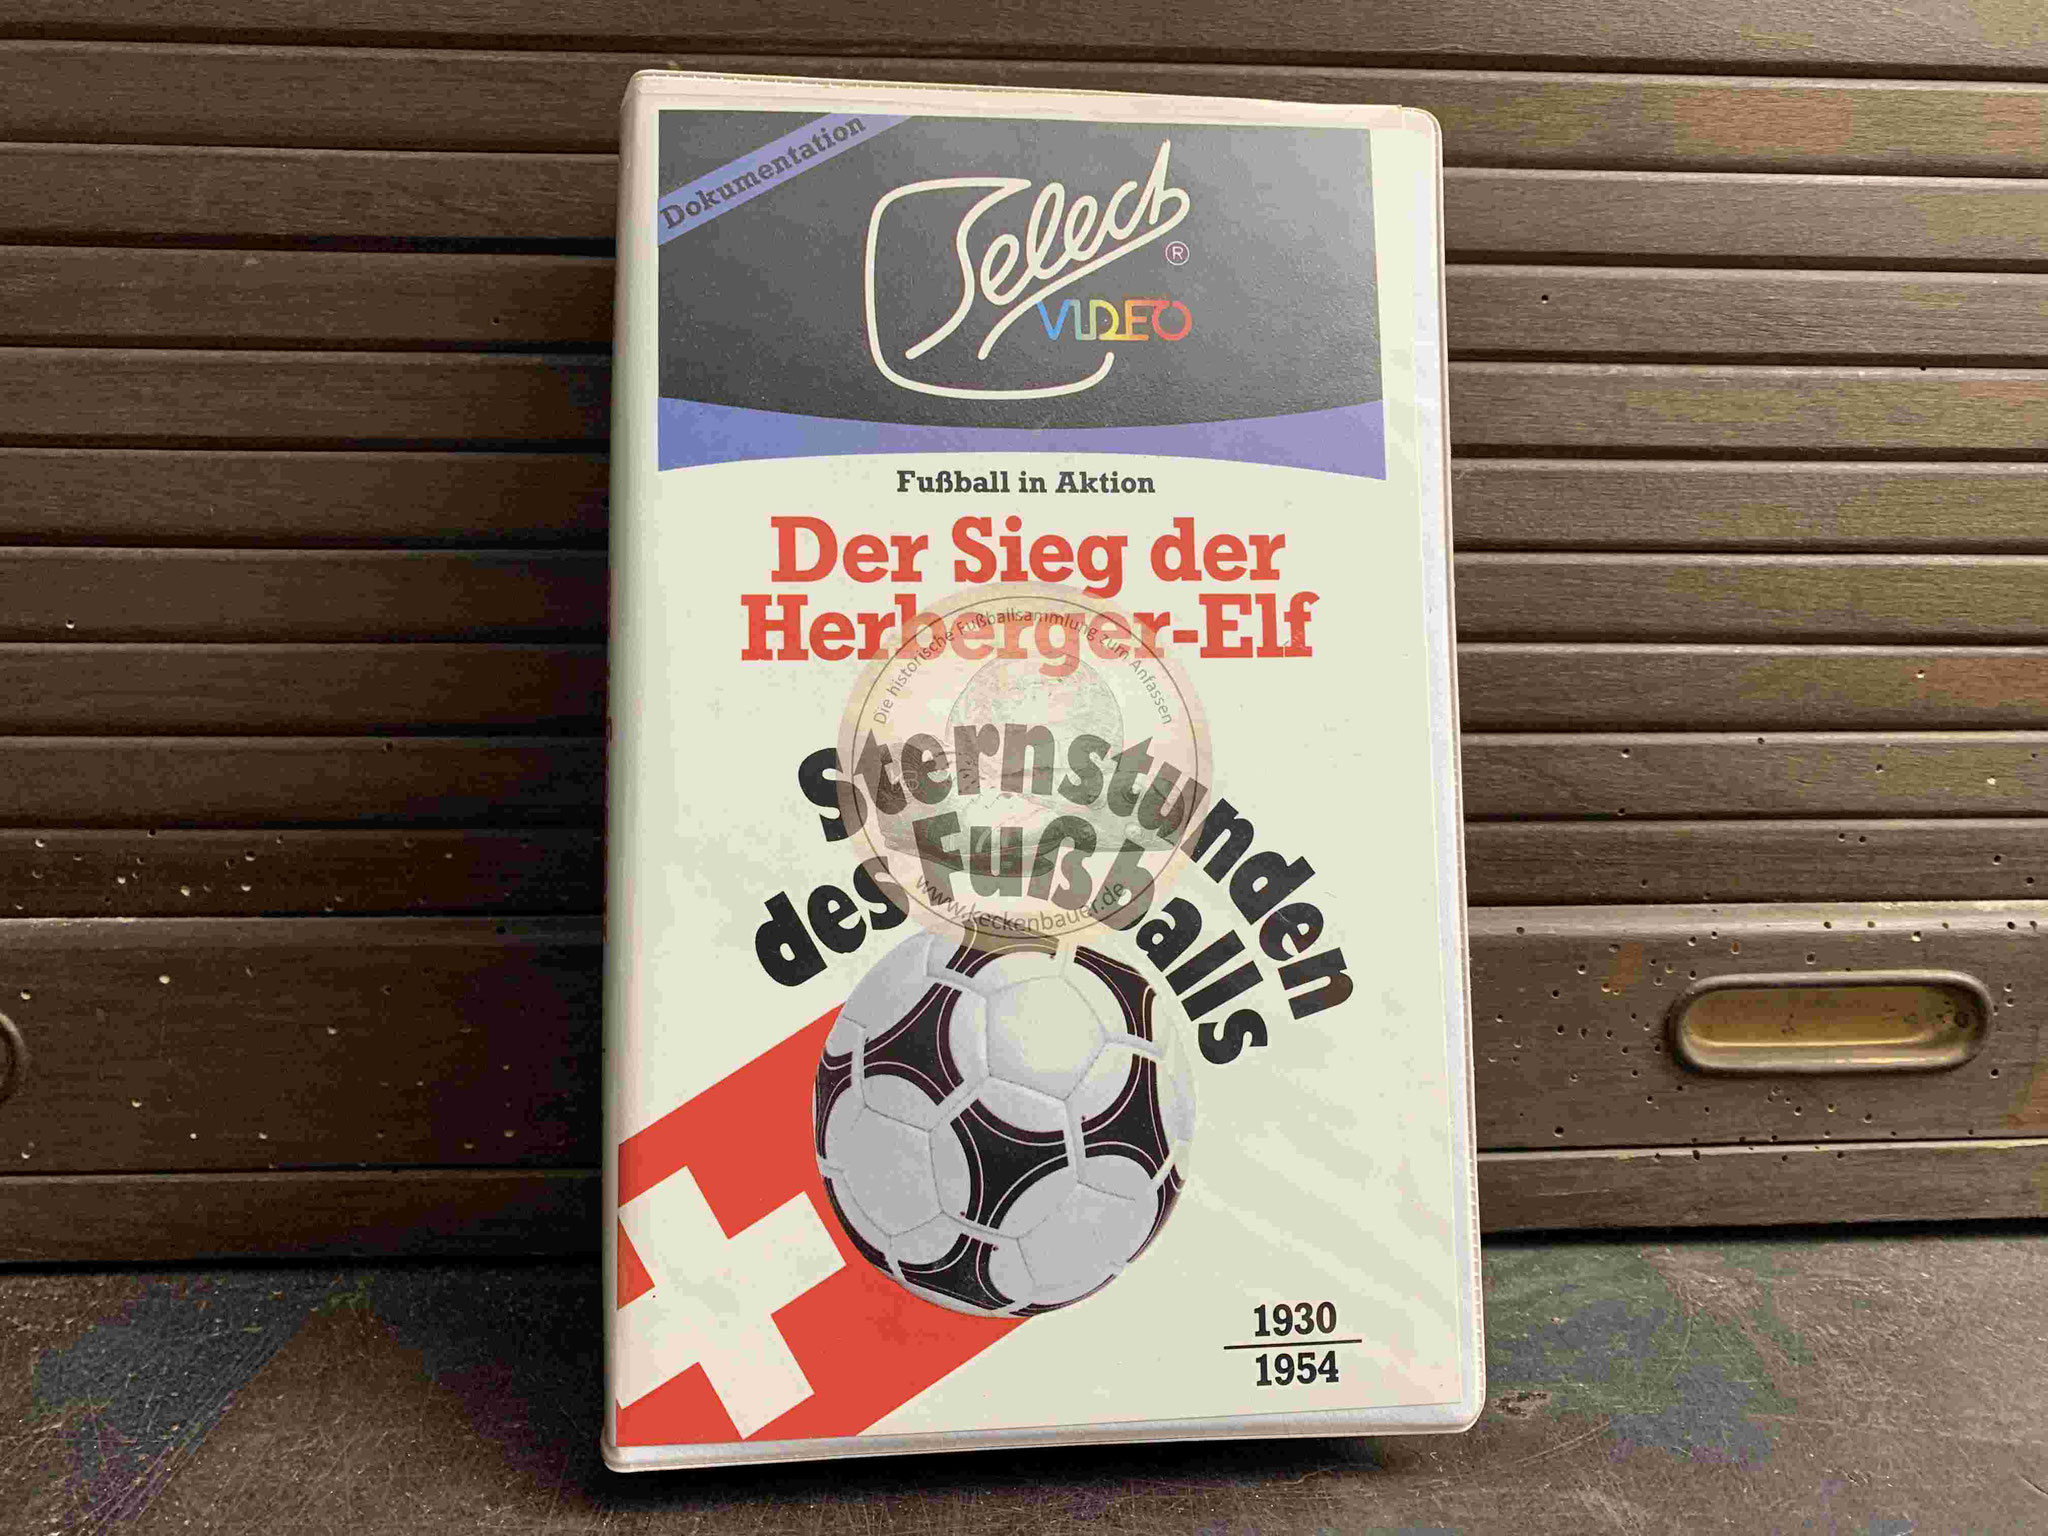 1981 Select Video Der Sieg der Herberger-Elf Sternstunden des Fußballs